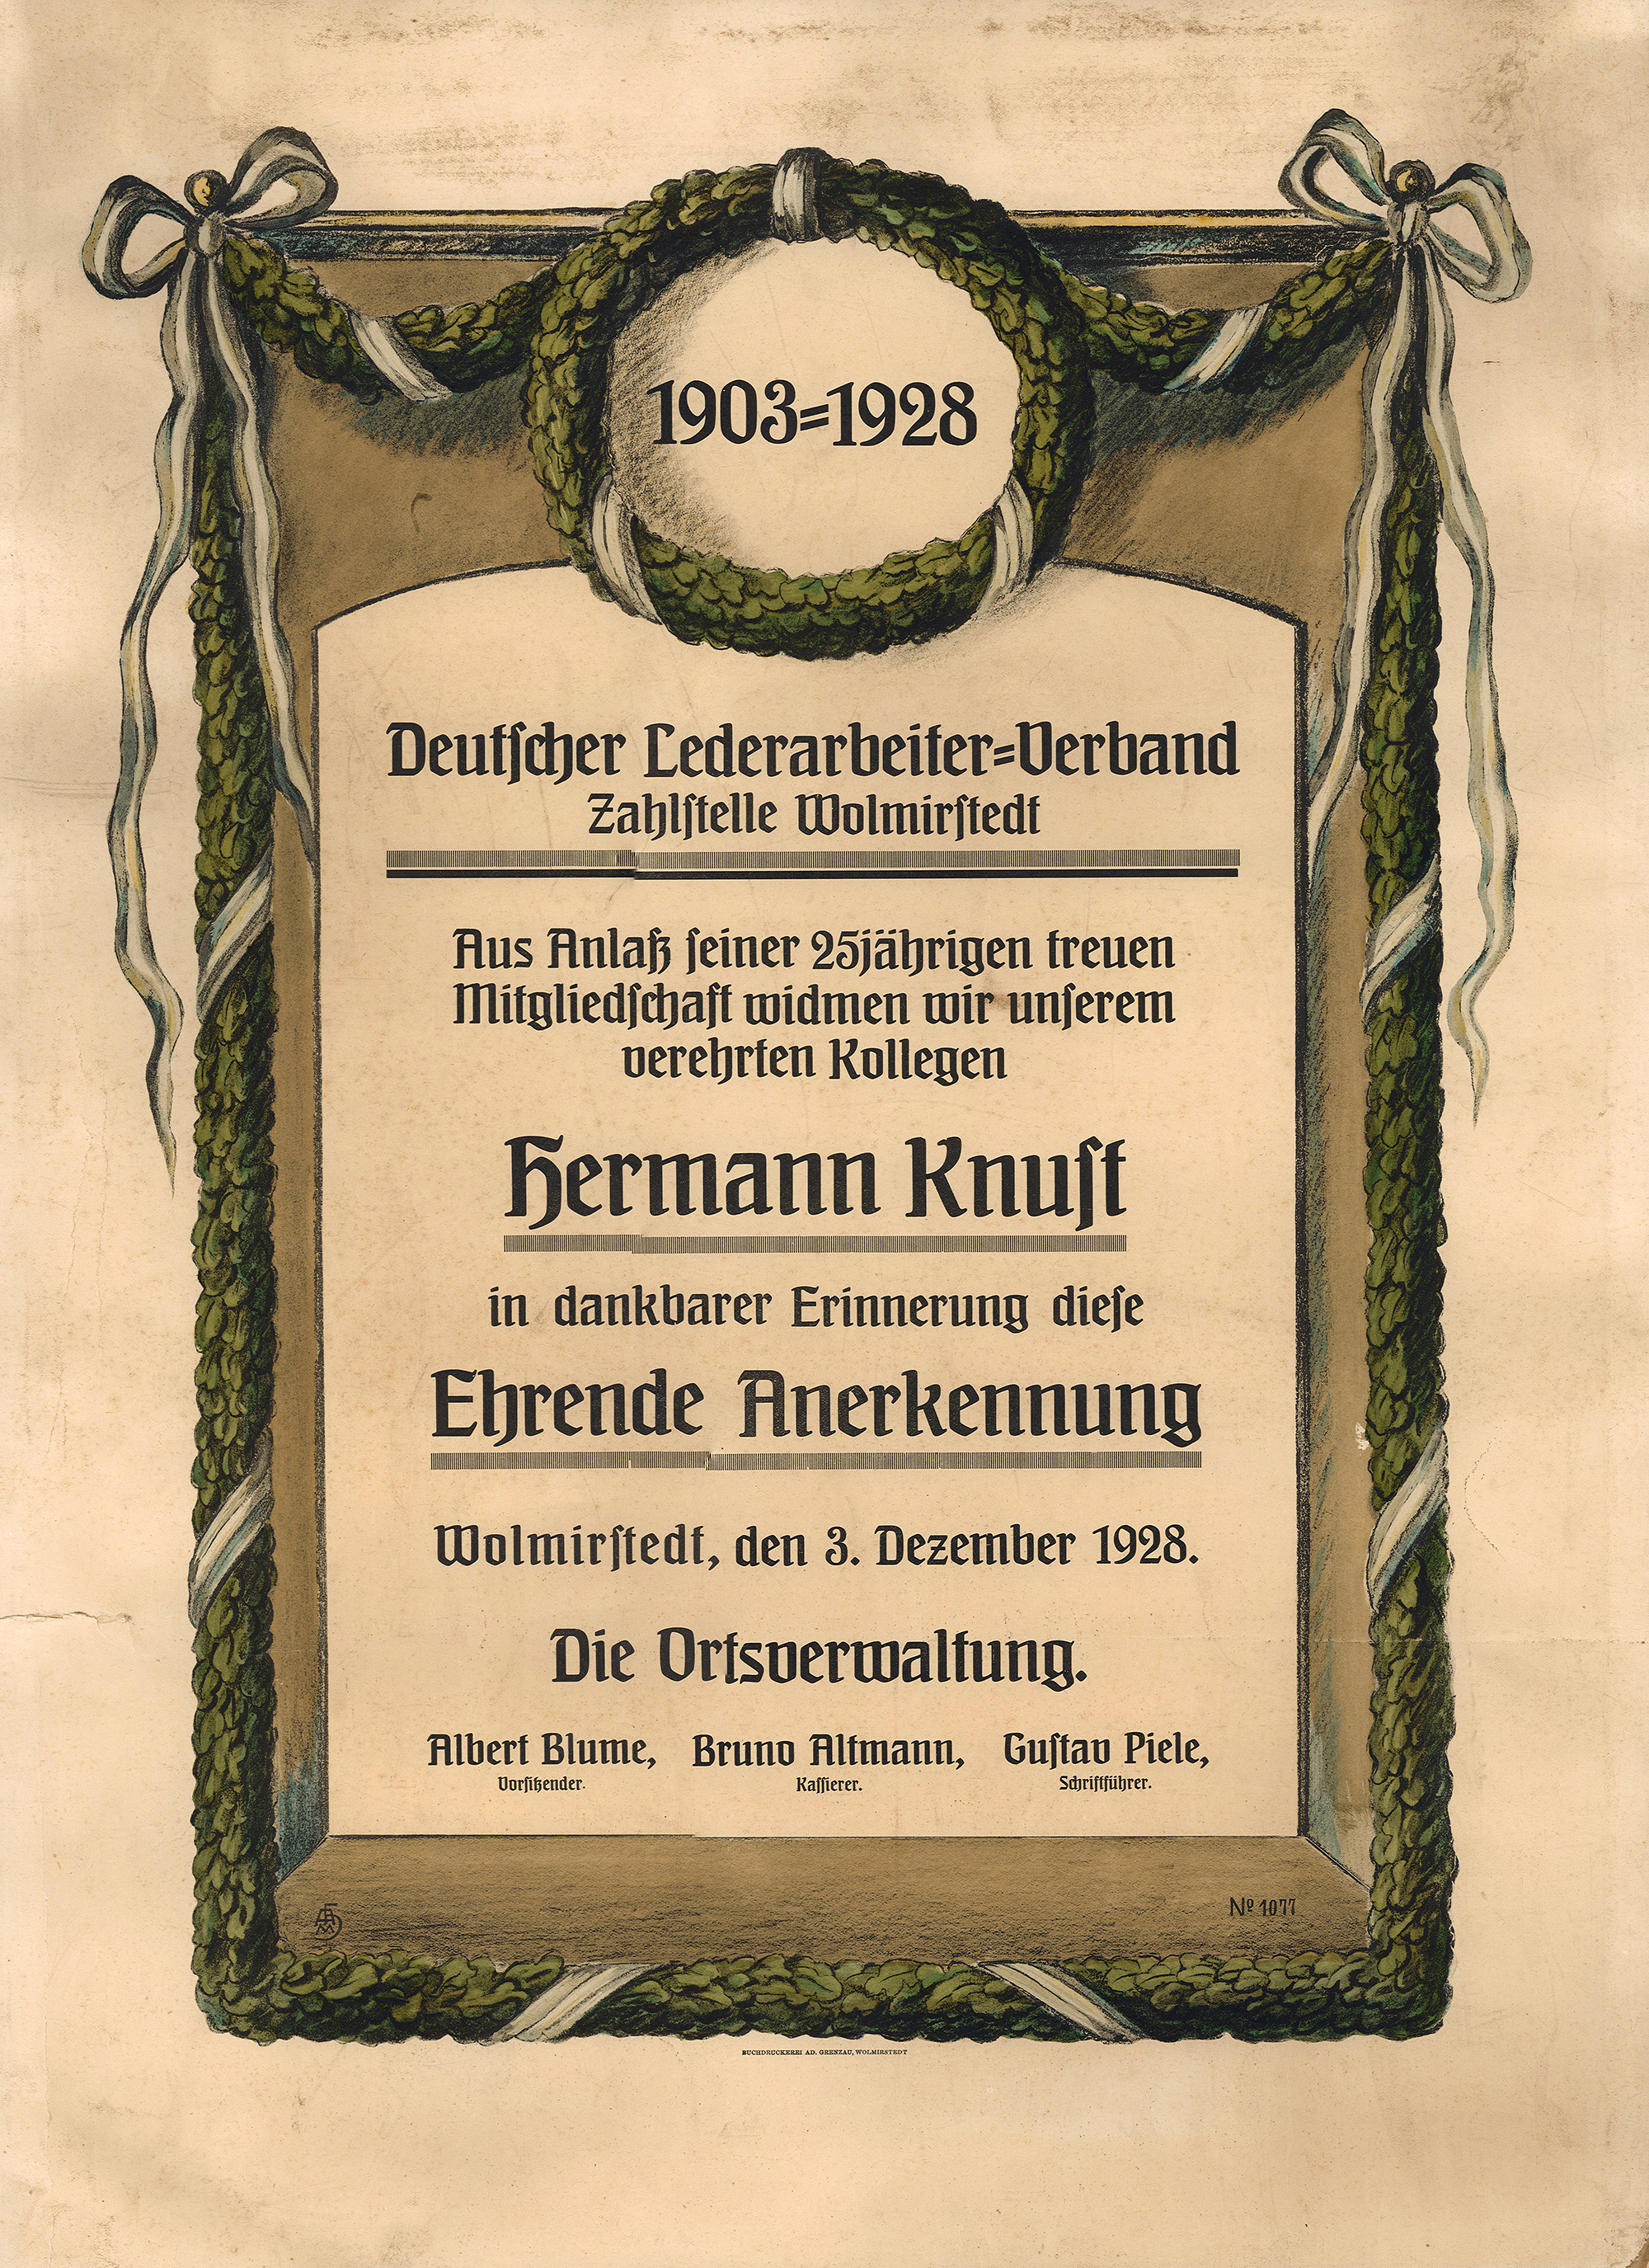 Urkunde zur 25-jährigen Mitgliedschaft des Hermann Knust im Deutschen Lederarbeiter-Verband, 1928 (Museum Wolmirstedt RR-F)